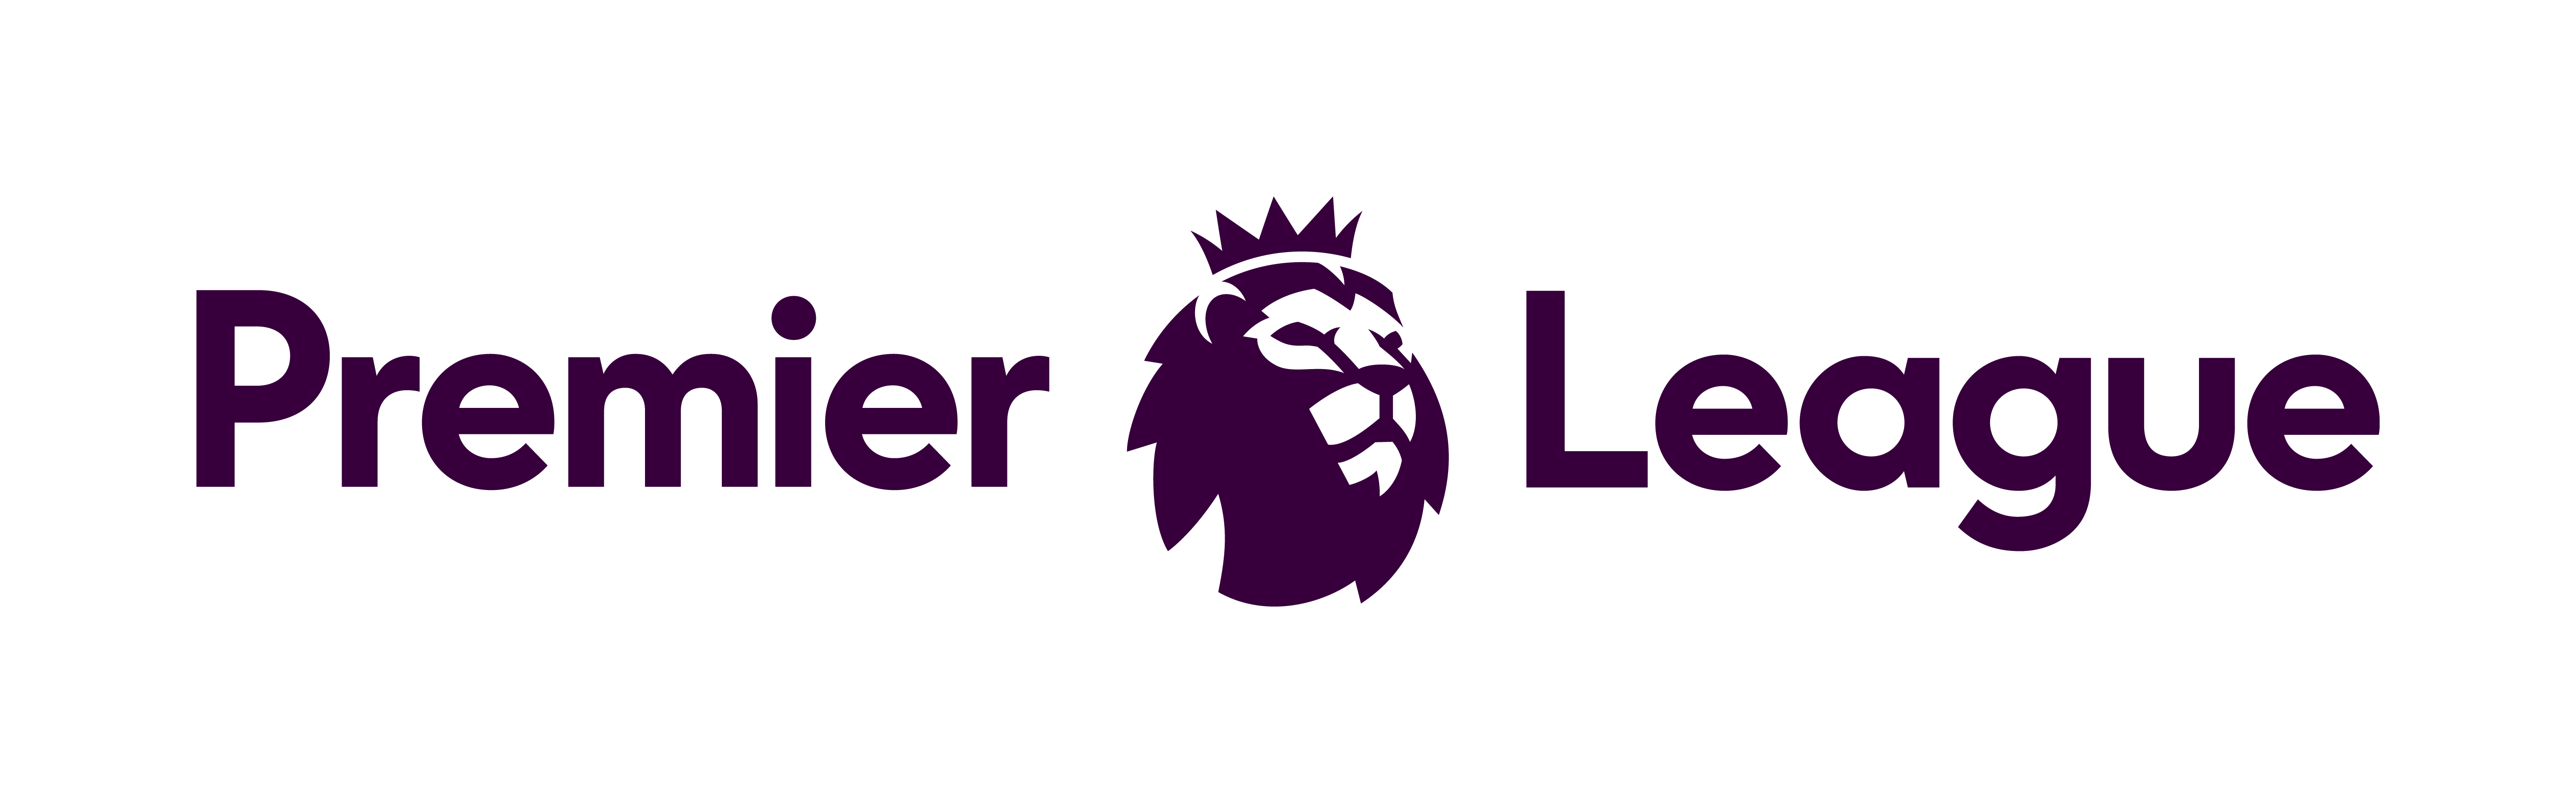 Англ премьер лига. Английская премьер лига. Логотип премьер Лиги. Эмблема английской премьер Лиги. EPL логотип.